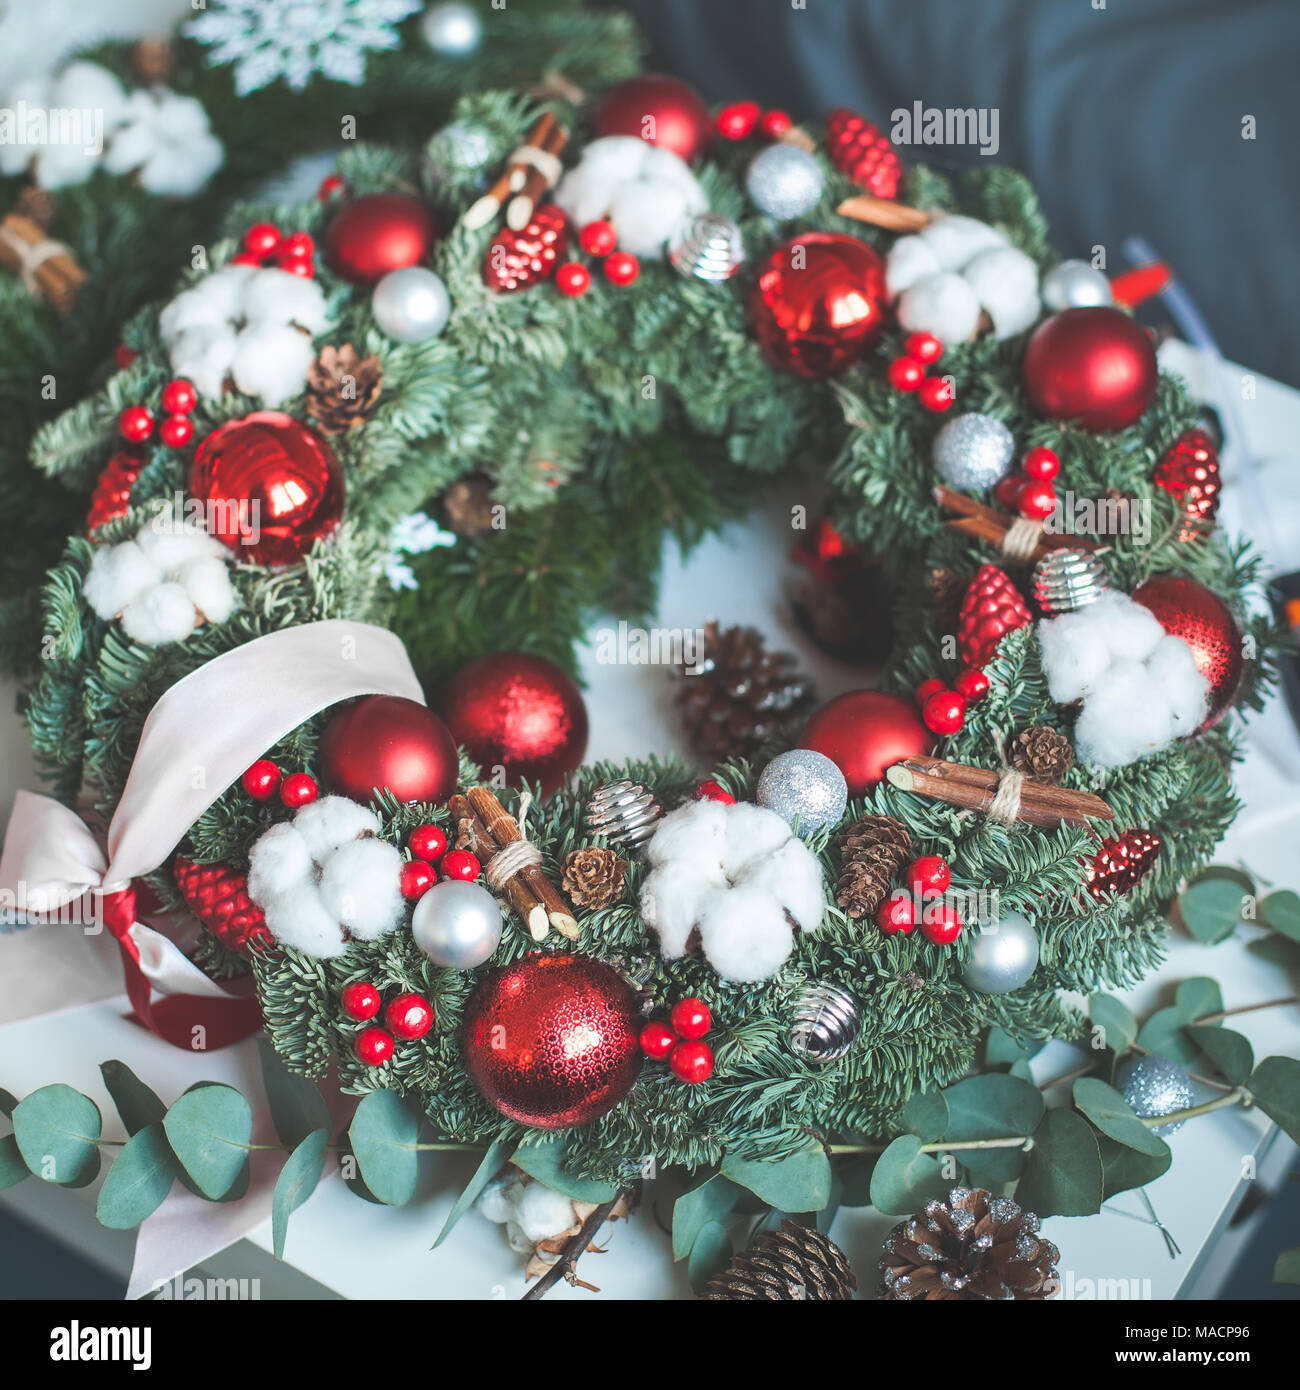 Decorazioni Natalizie Con Foglie Di Magnolia.Ghirlanda Di Natale Con Decorazioni Di Natale Evergreen Albero Di Natale Ramoscello Rosso Palle Di Vetro E Holly Bacche Foto Stock Alamy